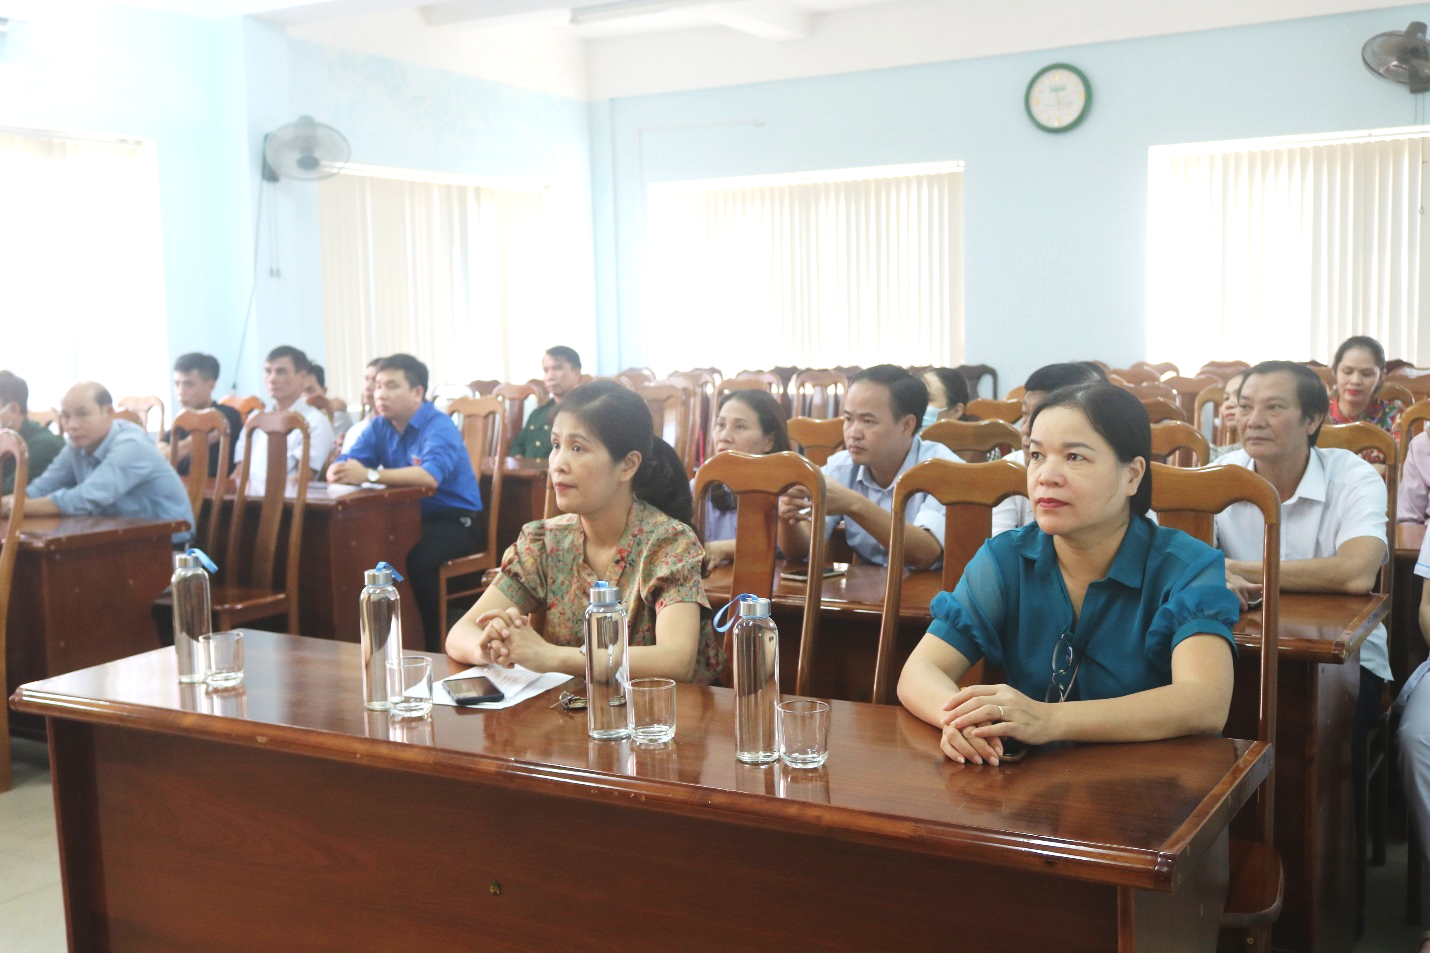 Đồng chí Nguyễn Thị Luyến - Phó Giám đốc Bệnh viện tham dự buổi gặp mặt